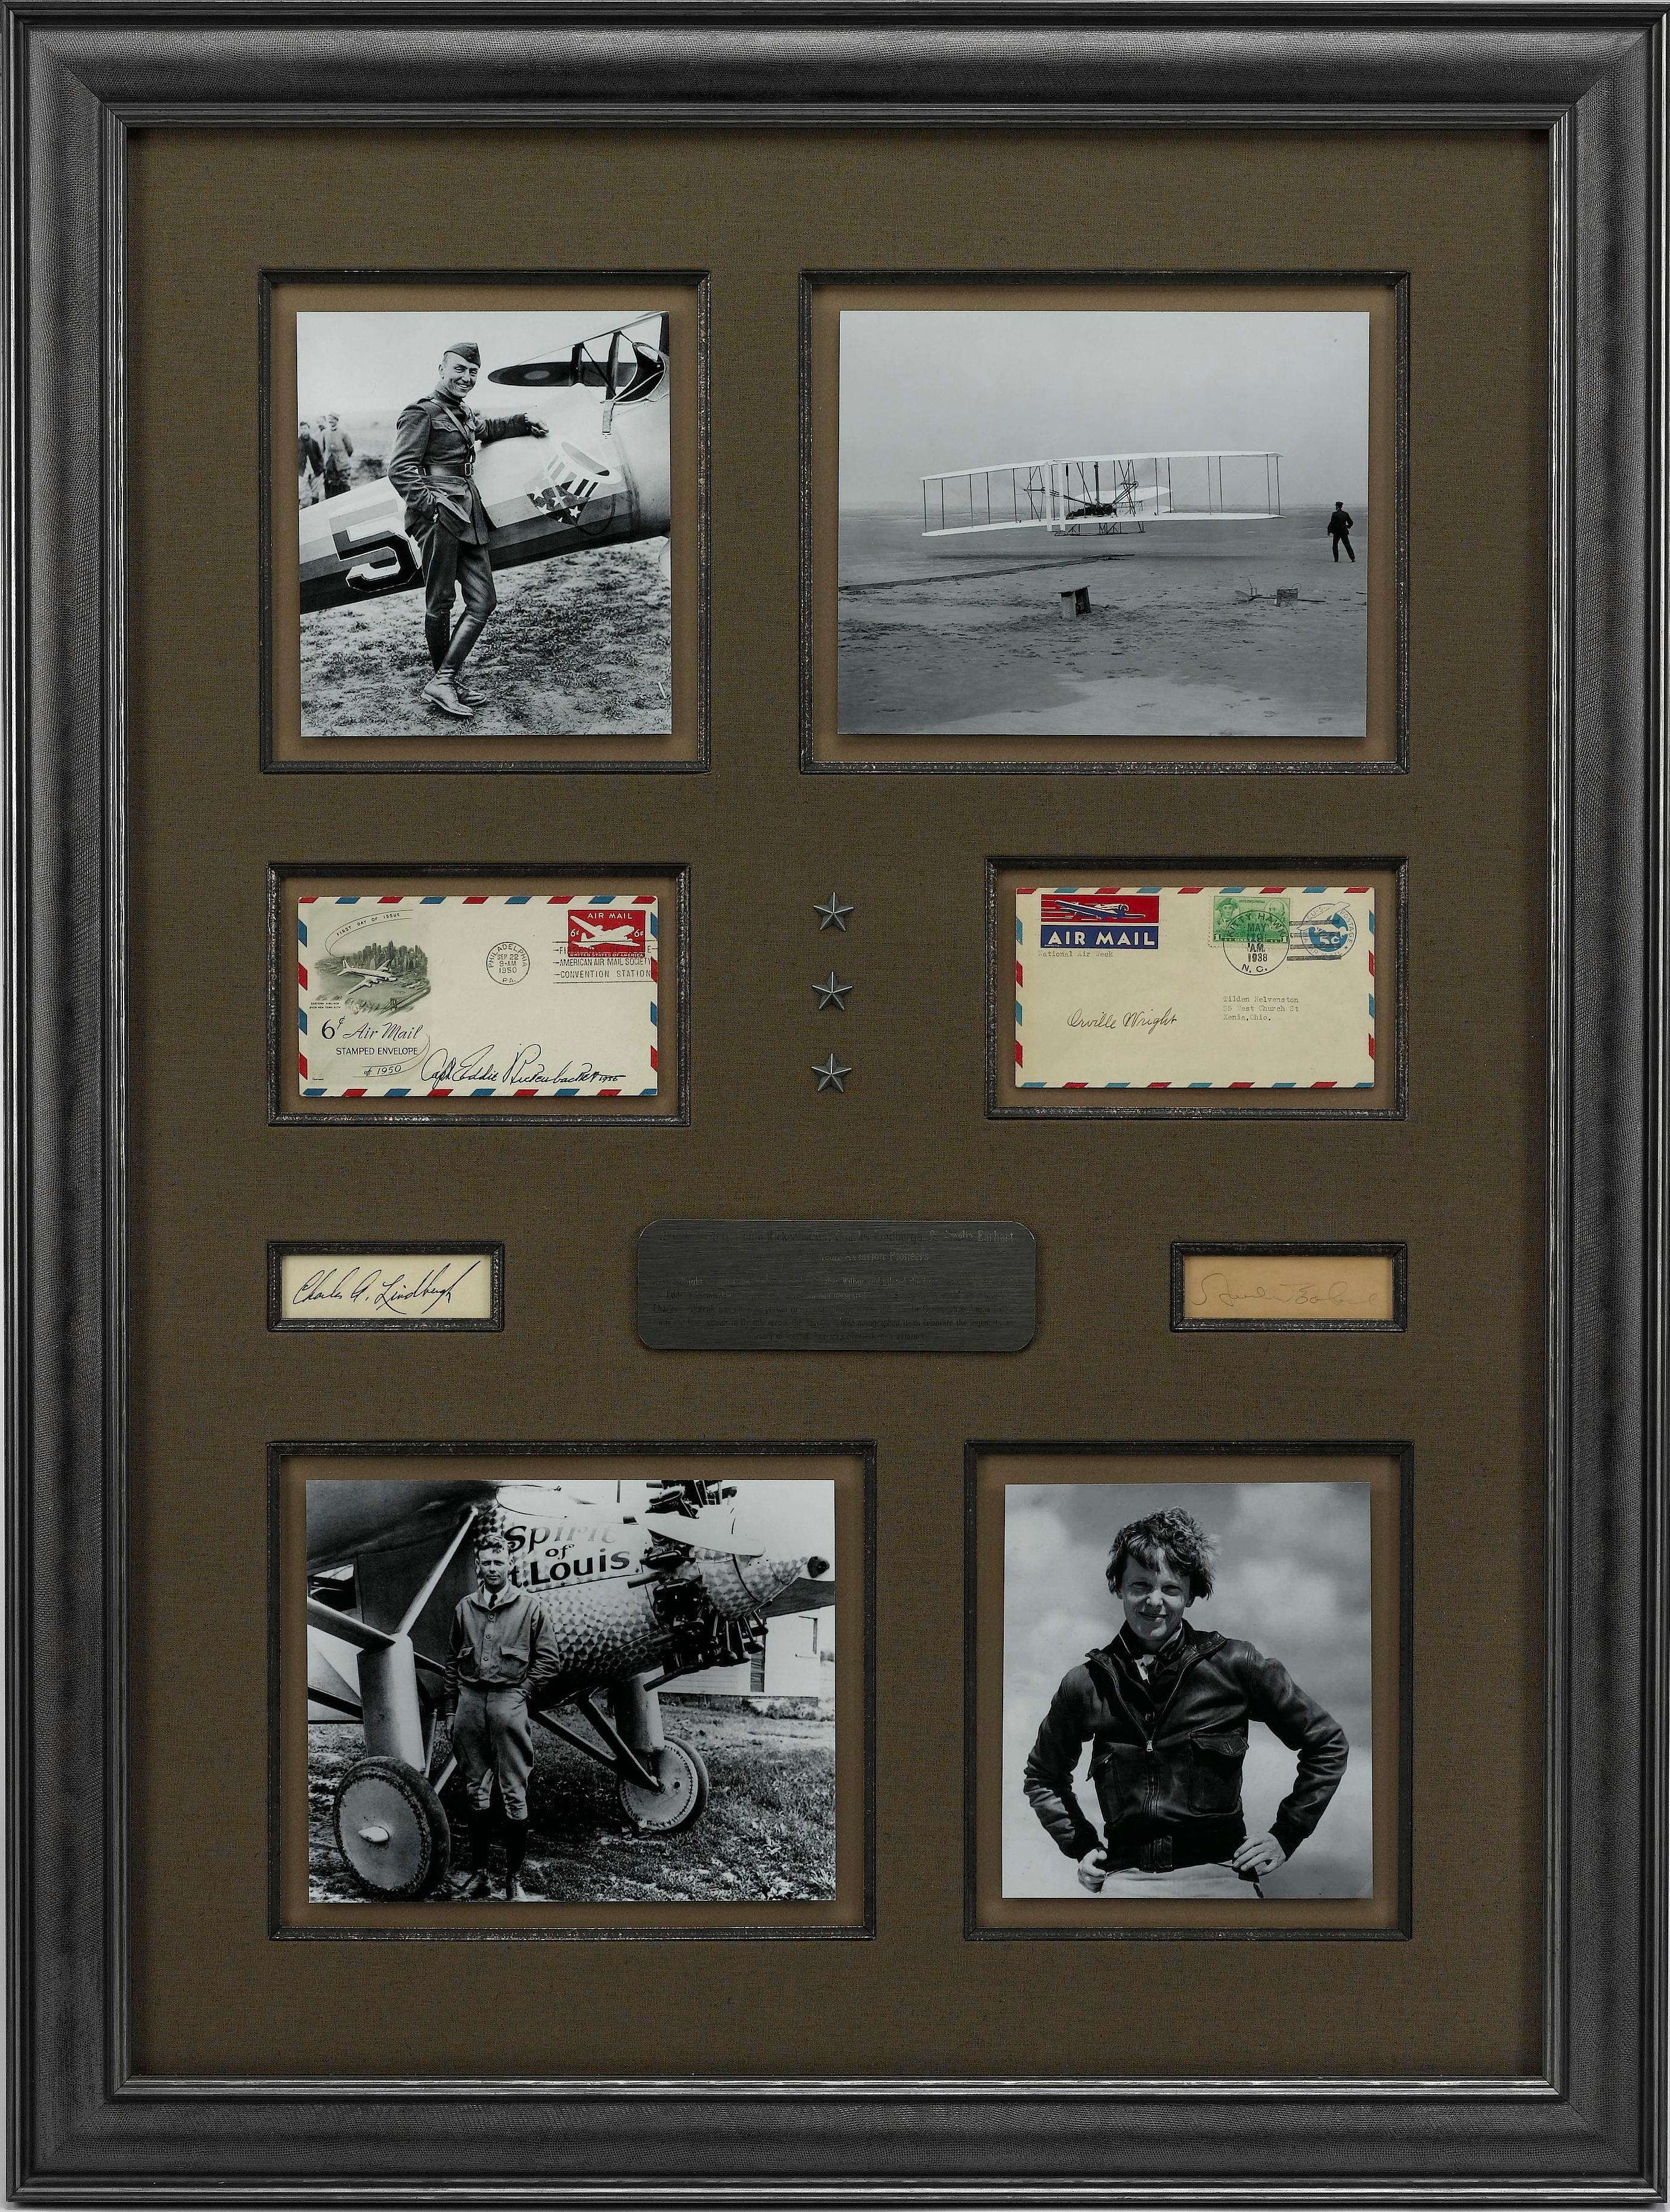 Diese Luftfahrt-Signatur-Collage würdigt vier große amerikanische Flugpioniere - Orville Wright, Eddie Rickenbacker, Charles Lindbergh und Amelia Earhart. Orville Wright erfand zusammen mit seinem Bruder Wilber das Flugzeug und war der Pilot des